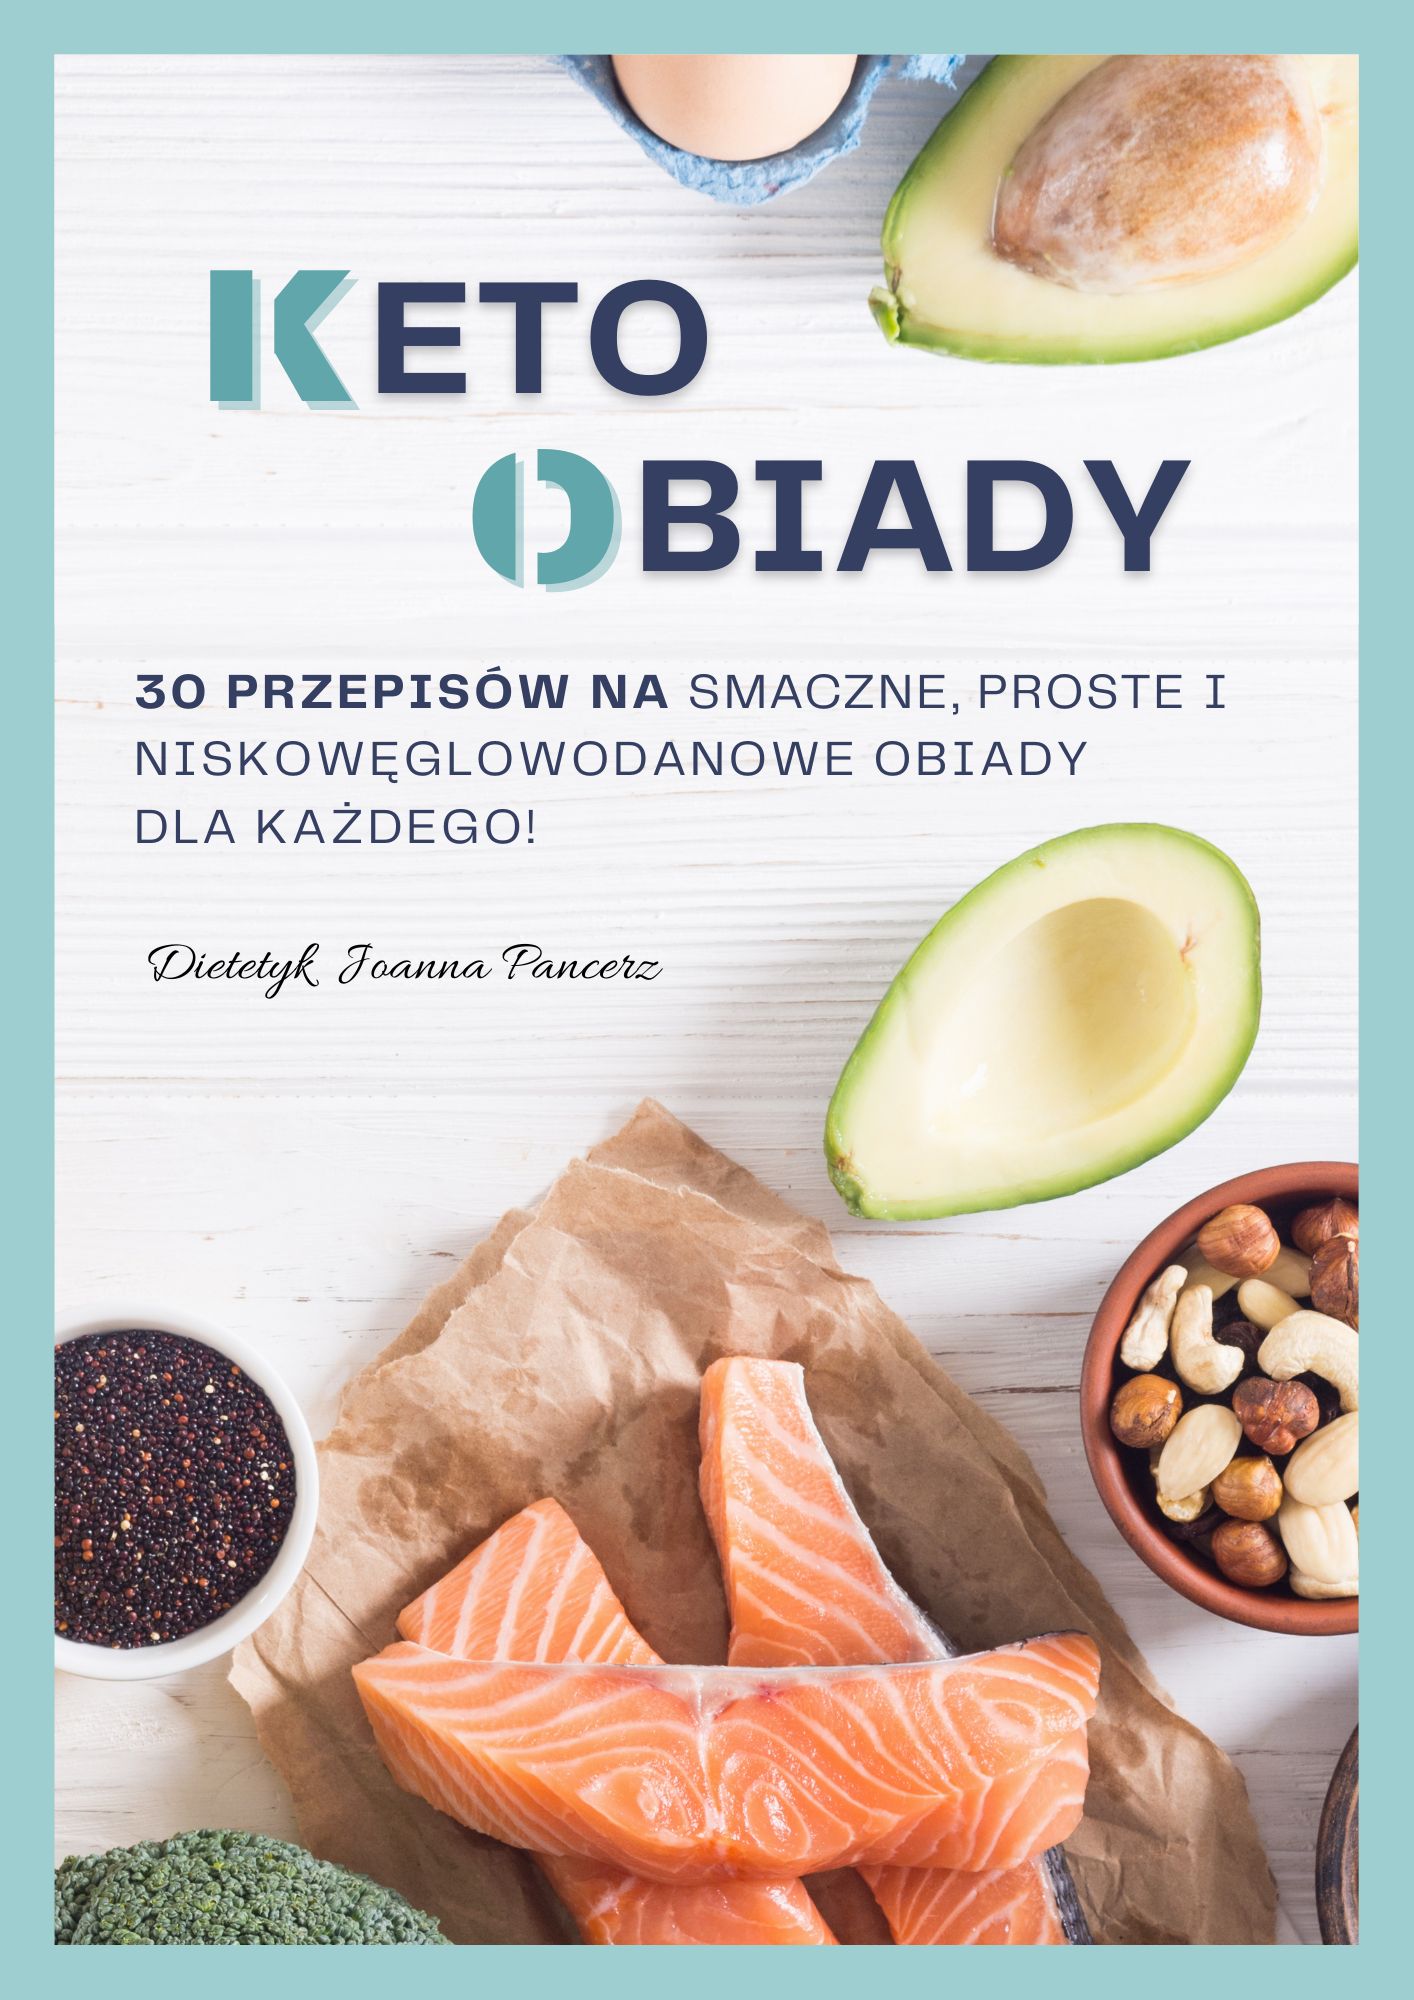 Ebook Keto Obiady jadietetyk.pl Blog dietetyczny